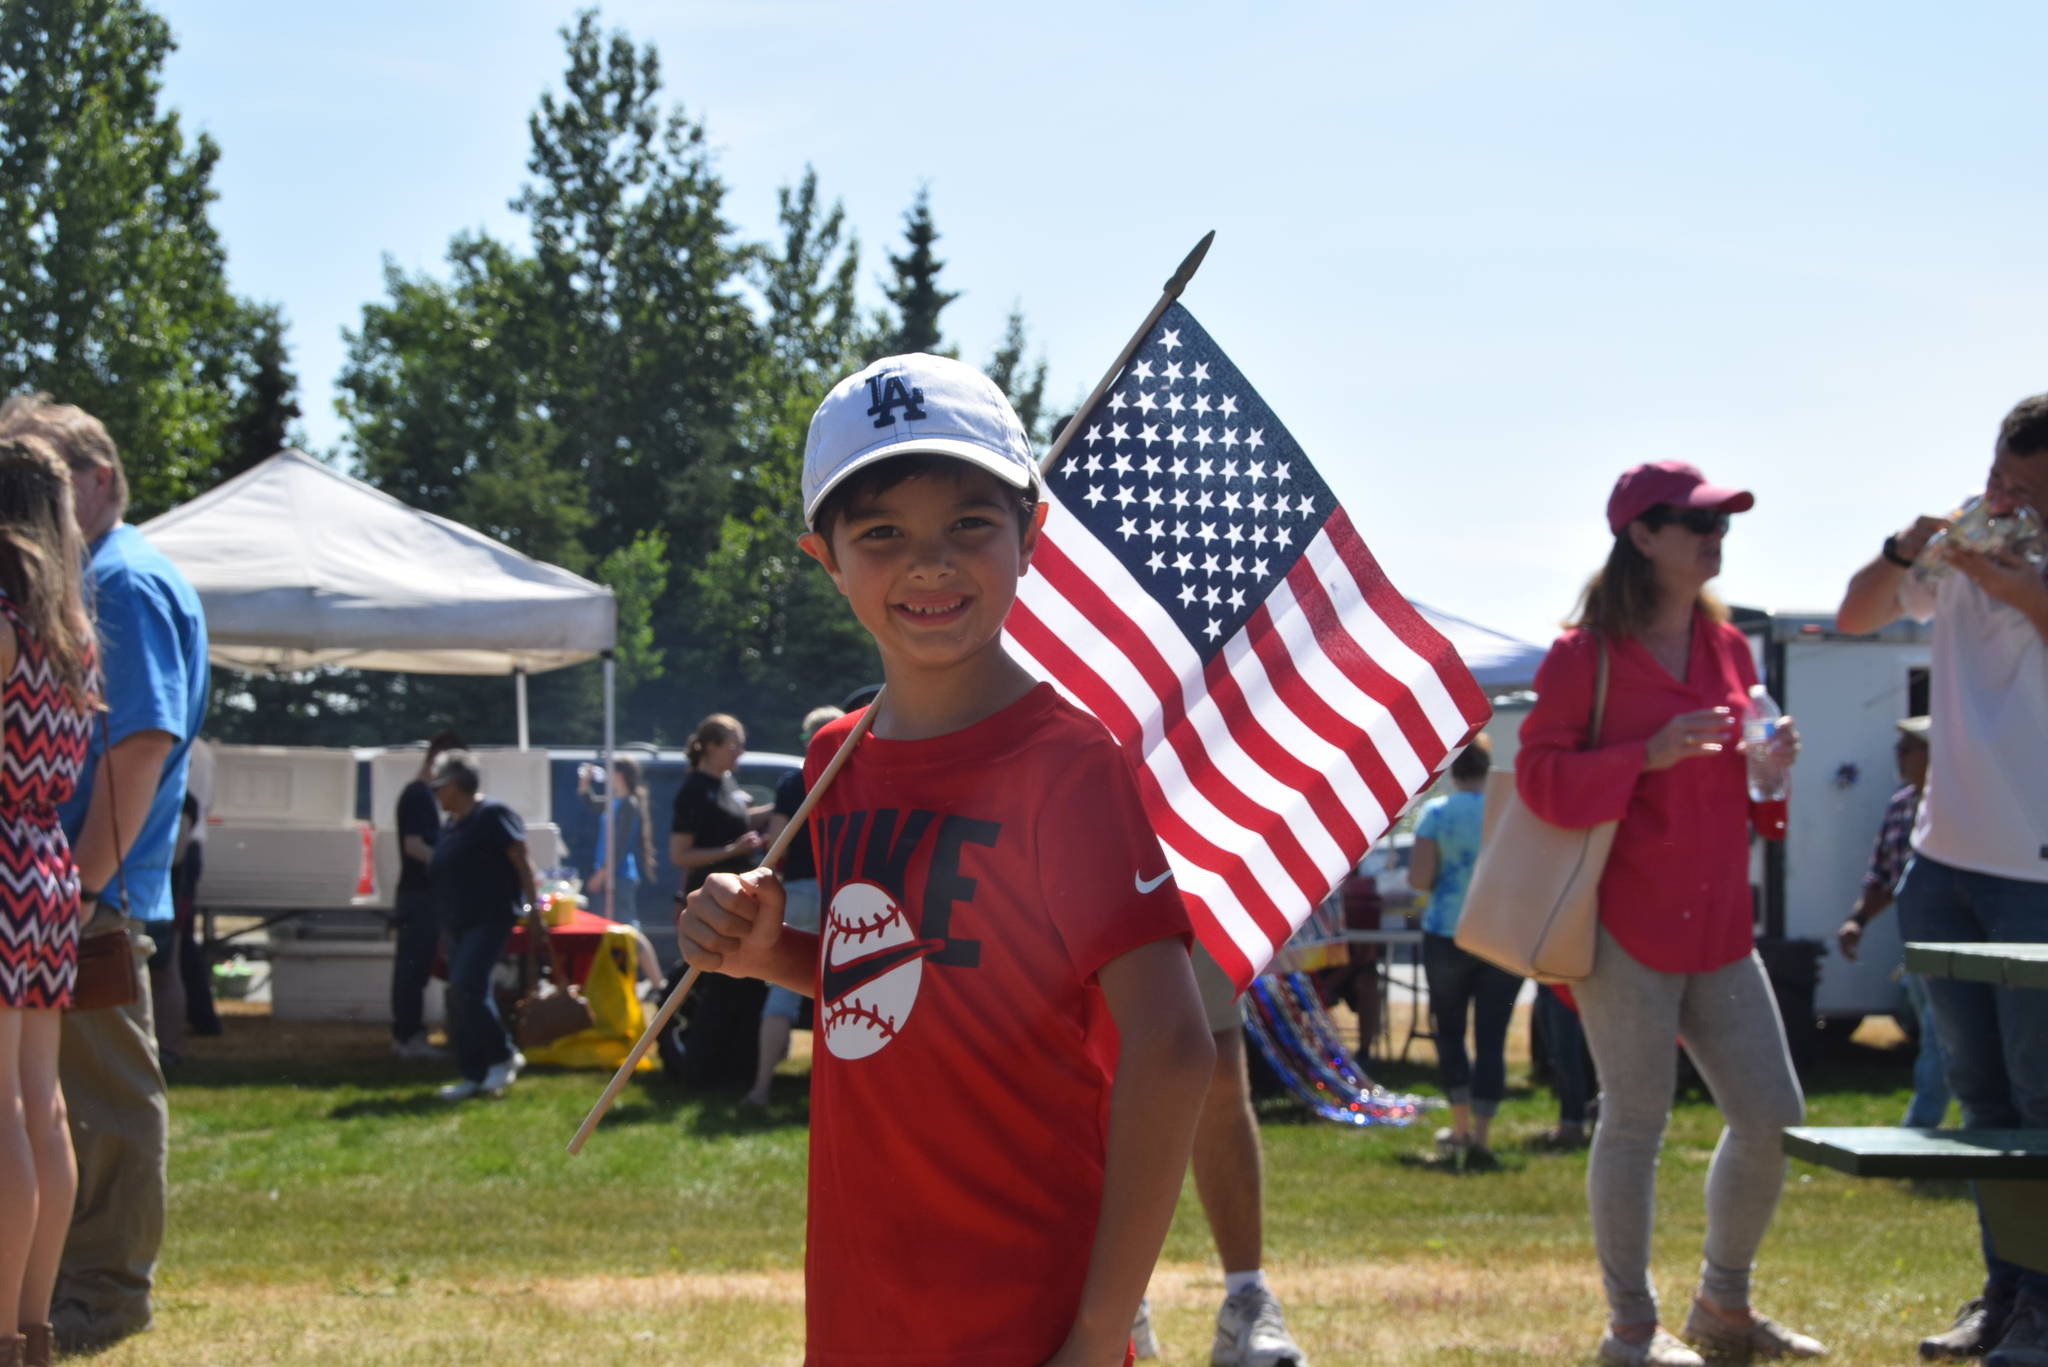 Reagan Reed poses with an American flag at the Kenai Park Strip during the July 4th parade in Kenai, Alaska. (Photo by Brian Mazurek/Peninsula Clarion)